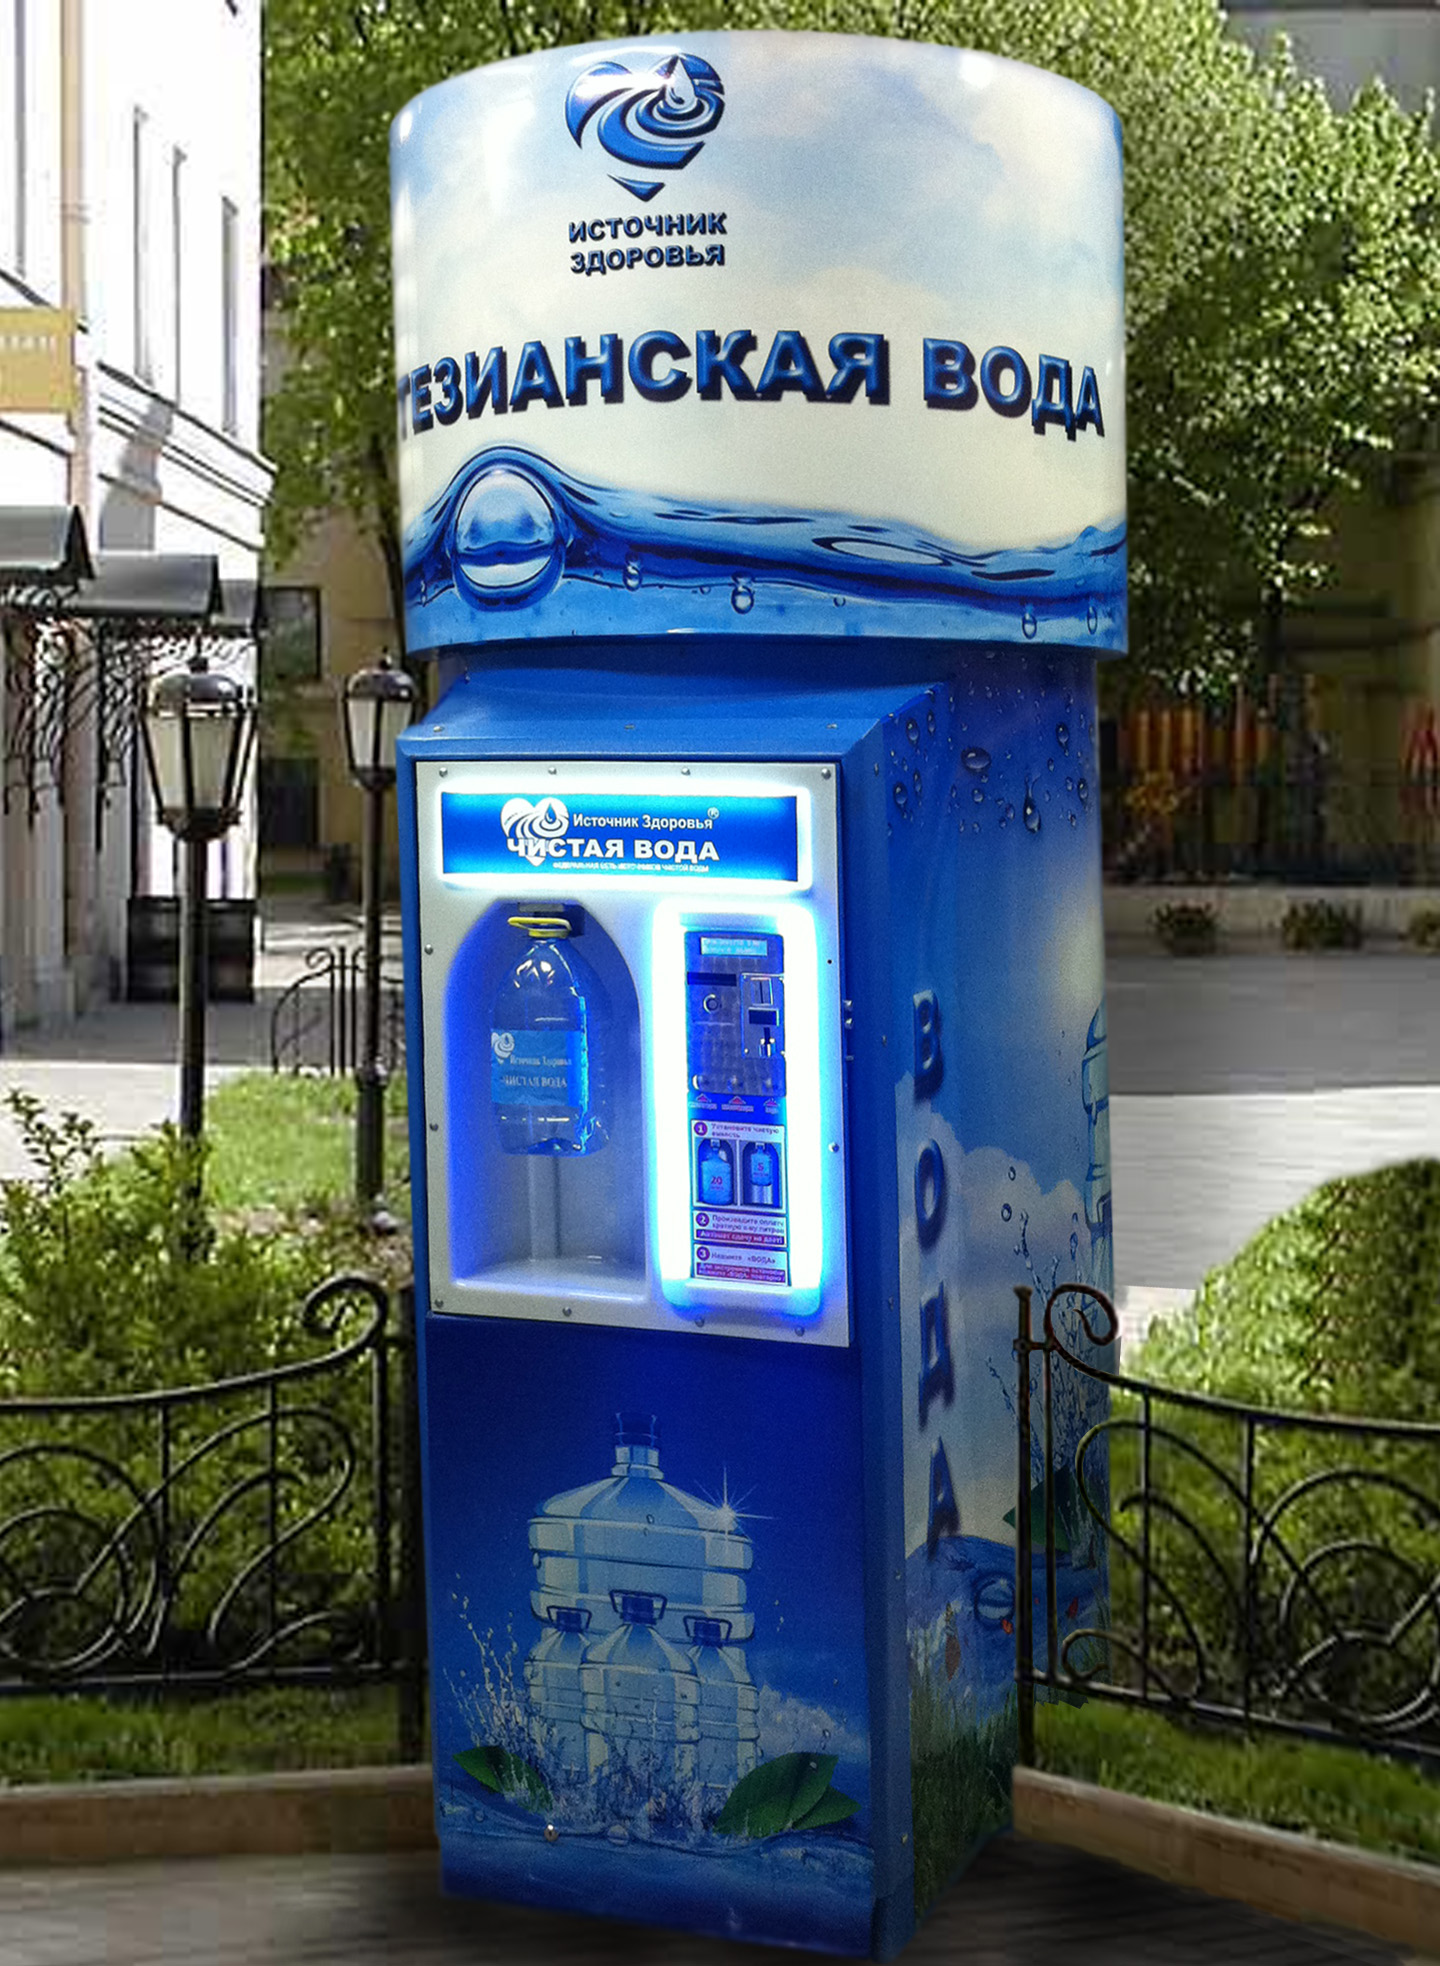 Продажа воды на улице в розлив. Автомат с водой. Аппарат для воды. Автомат для розлива воды. Аппарат для розлива воды на улице.